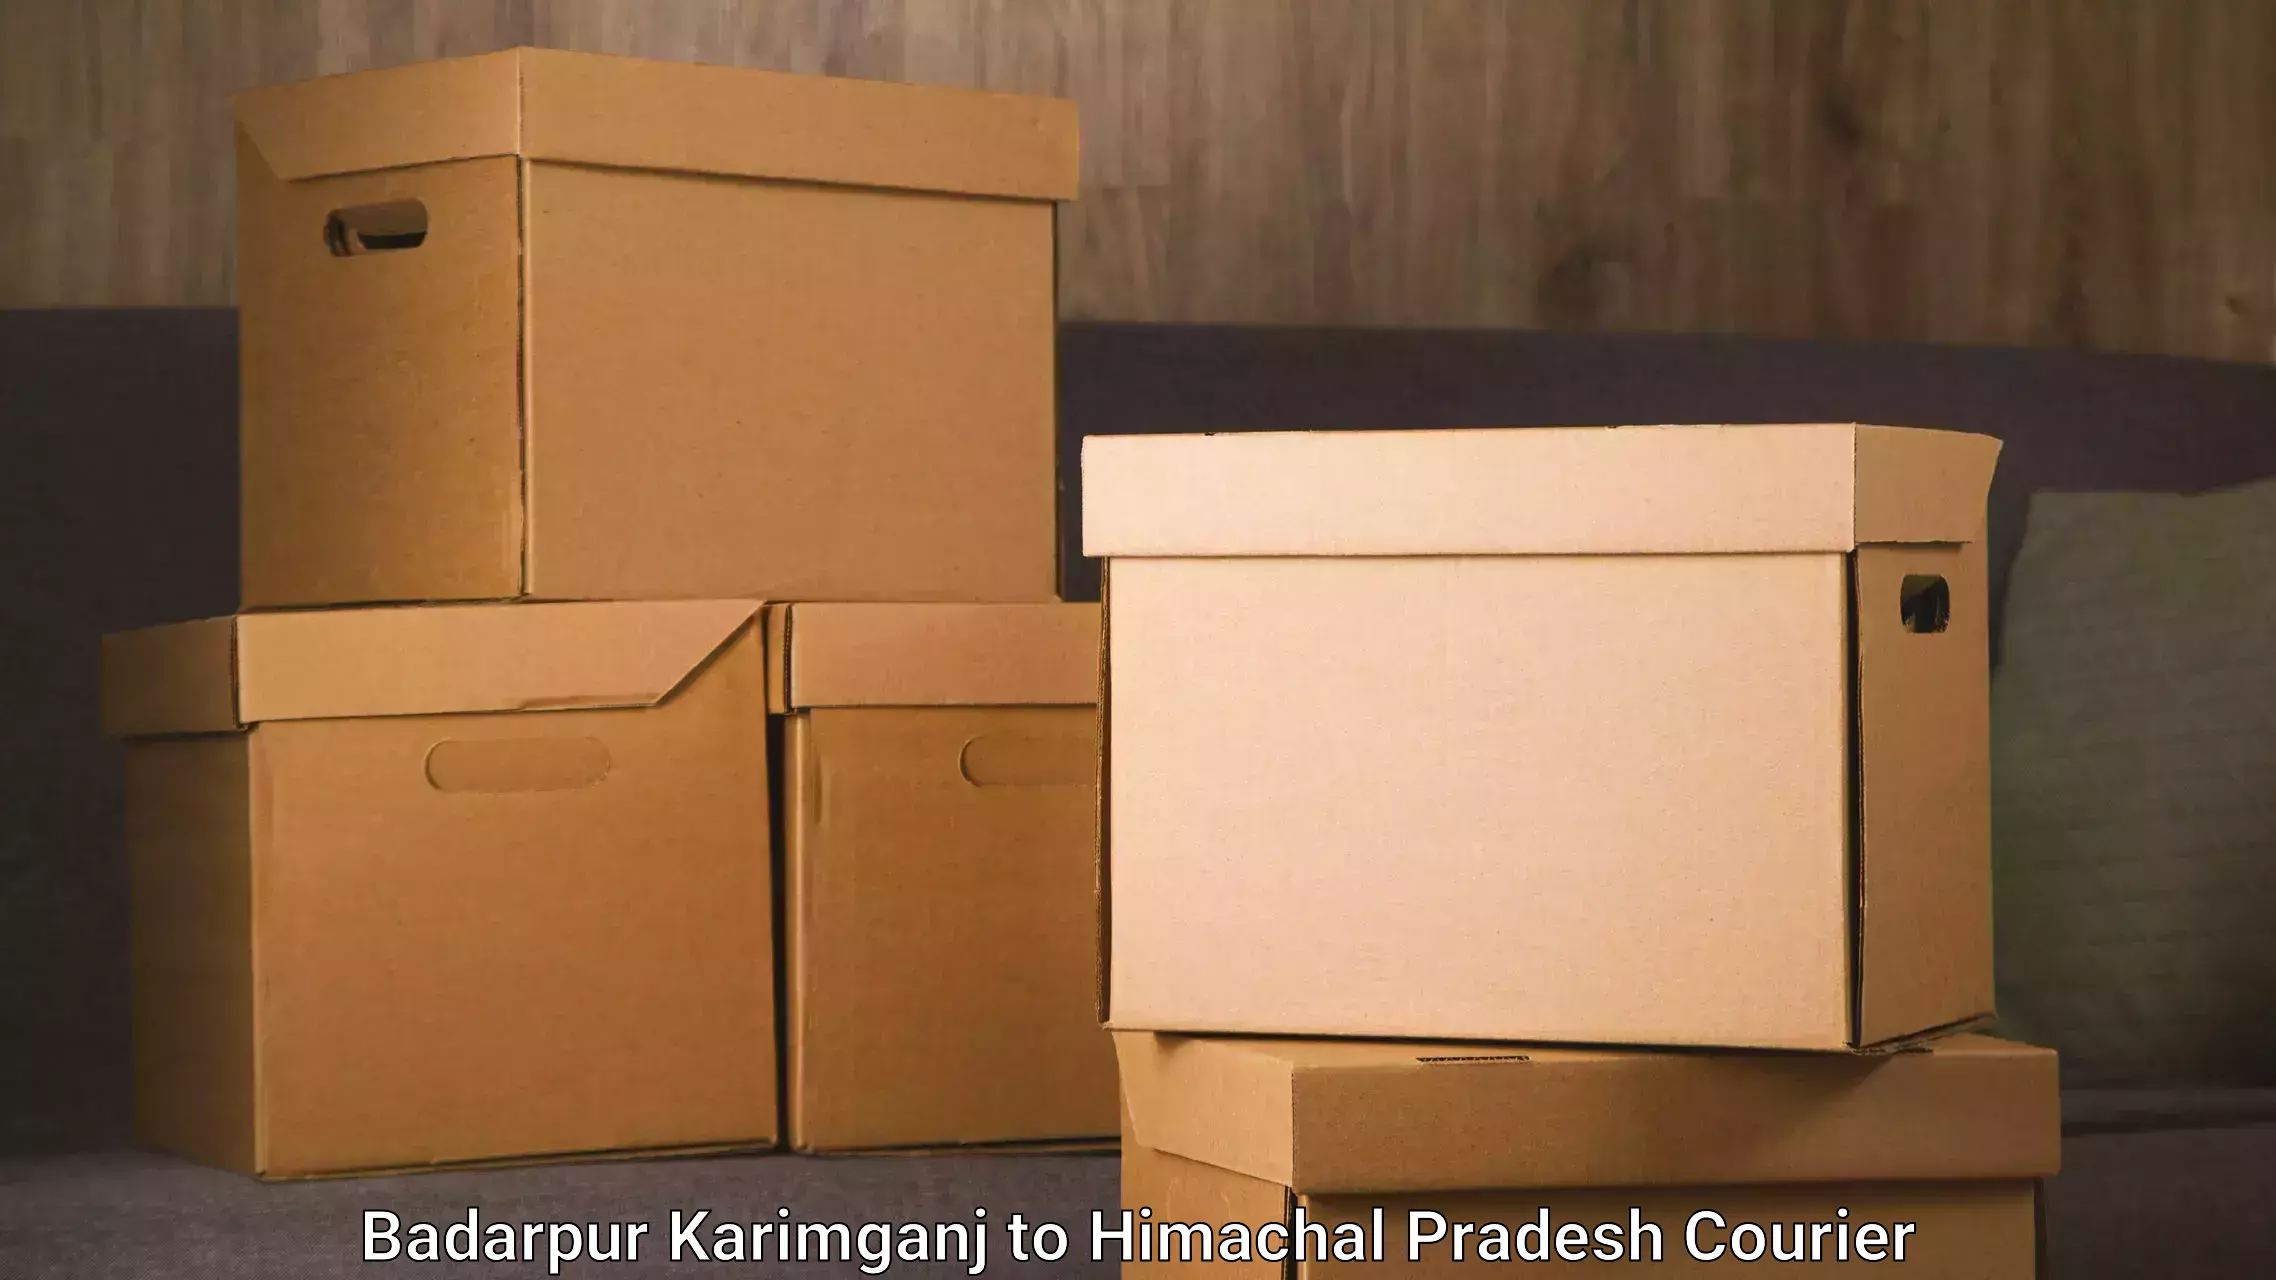 Professional courier handling Badarpur Karimganj to Chintpurni